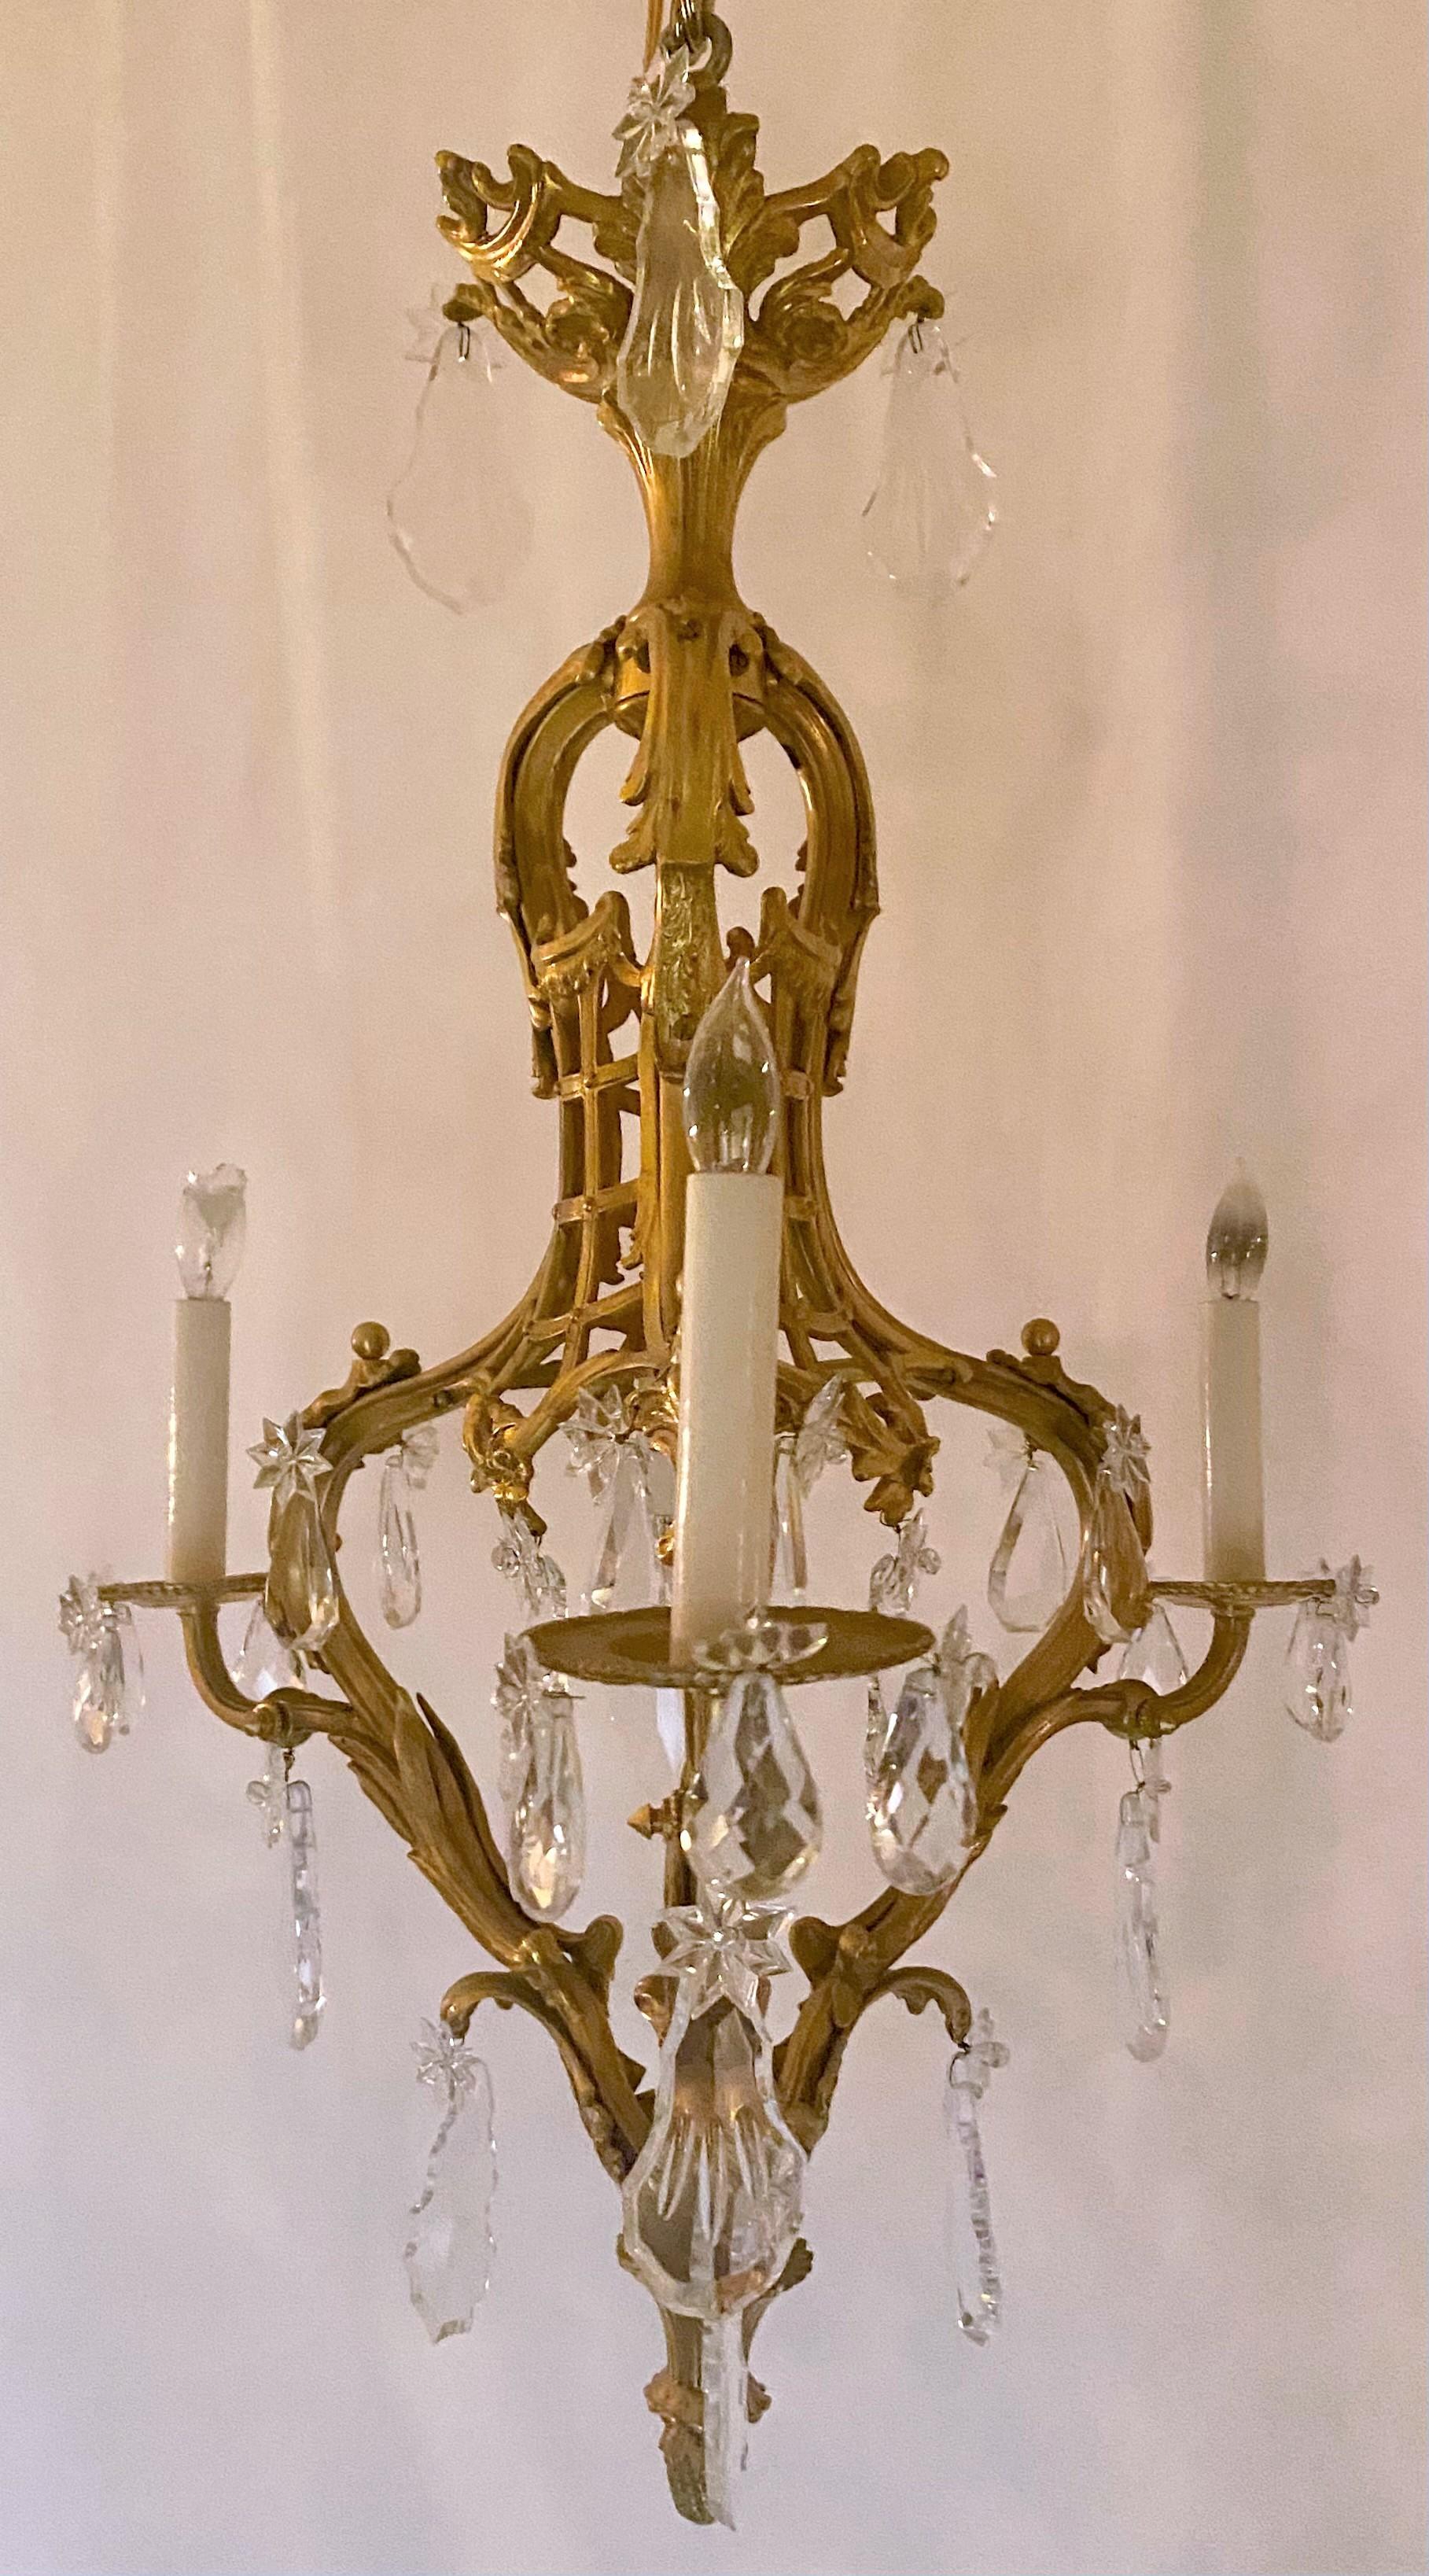 Antiker französischer Louis XV-Kronleuchter aus Ormolu und Baccarat-Kristall mit 3 Lichtern, um 1870-1880.
CHC202.